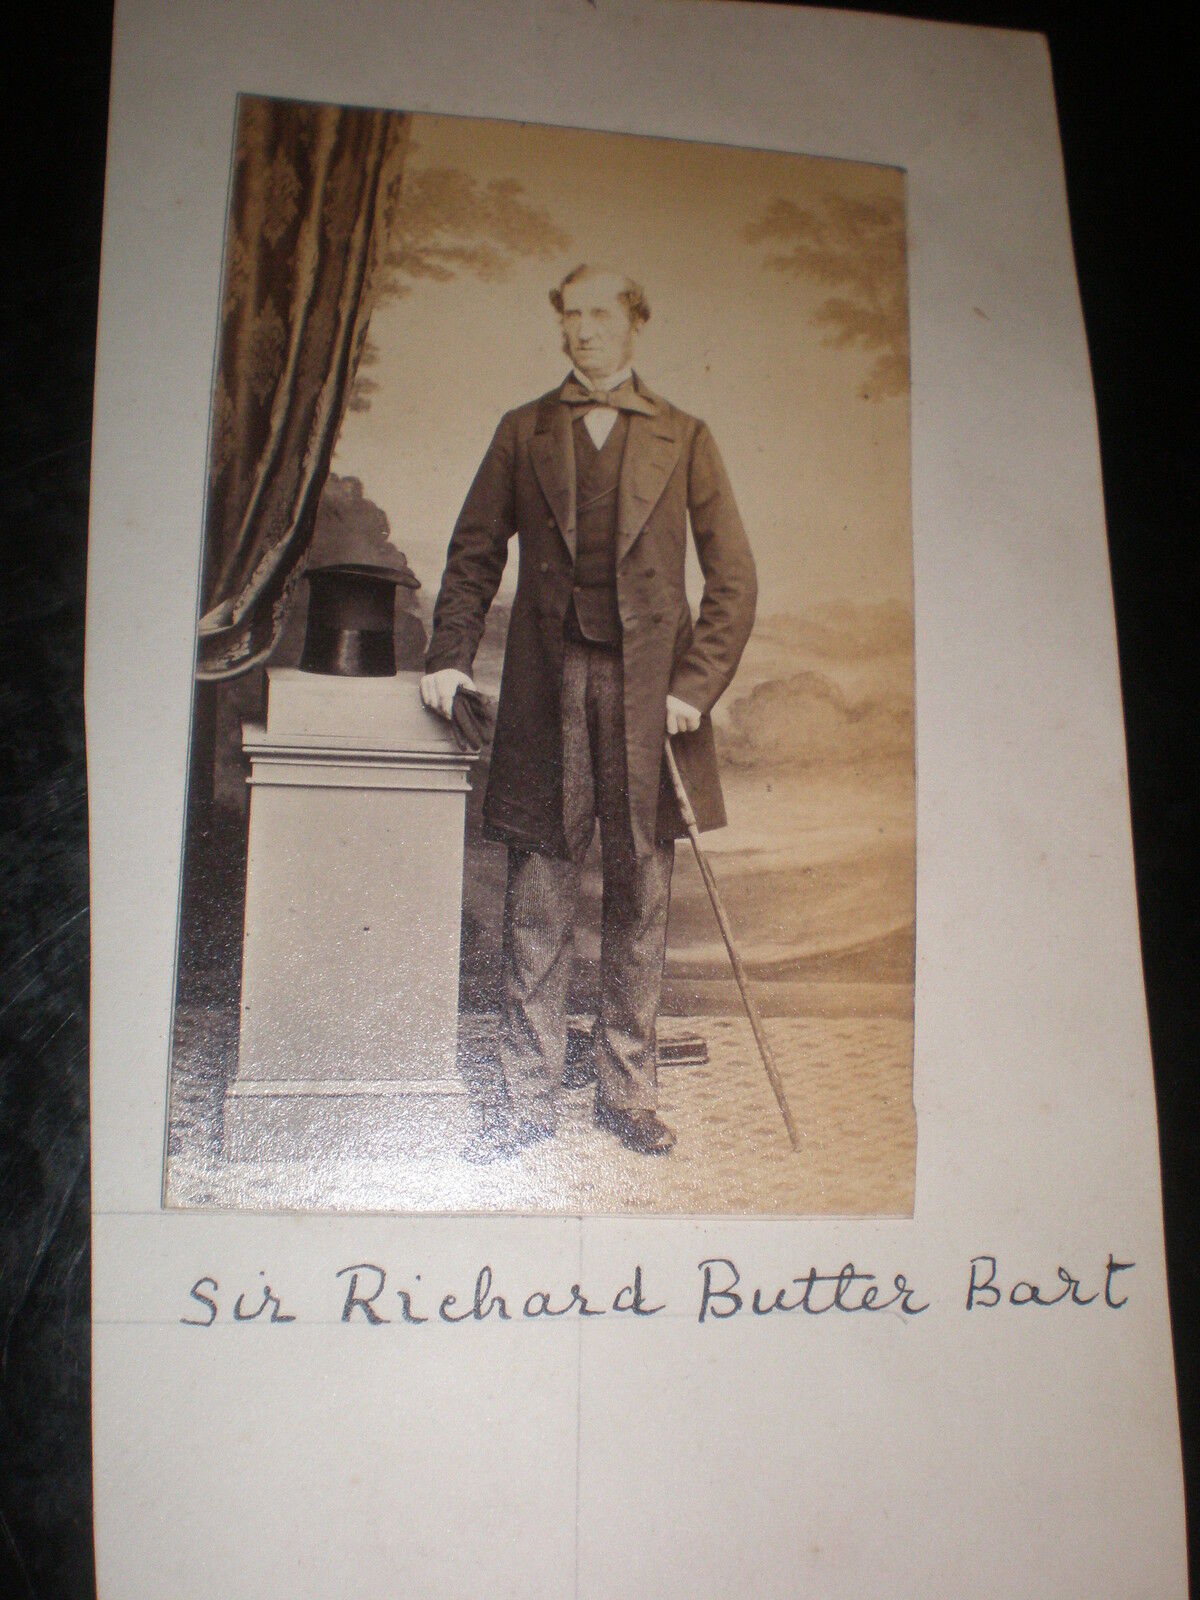 Cdv Old Photograph Sir richard Butler 9th baronet of Cloughgrenan Ireland c1860s